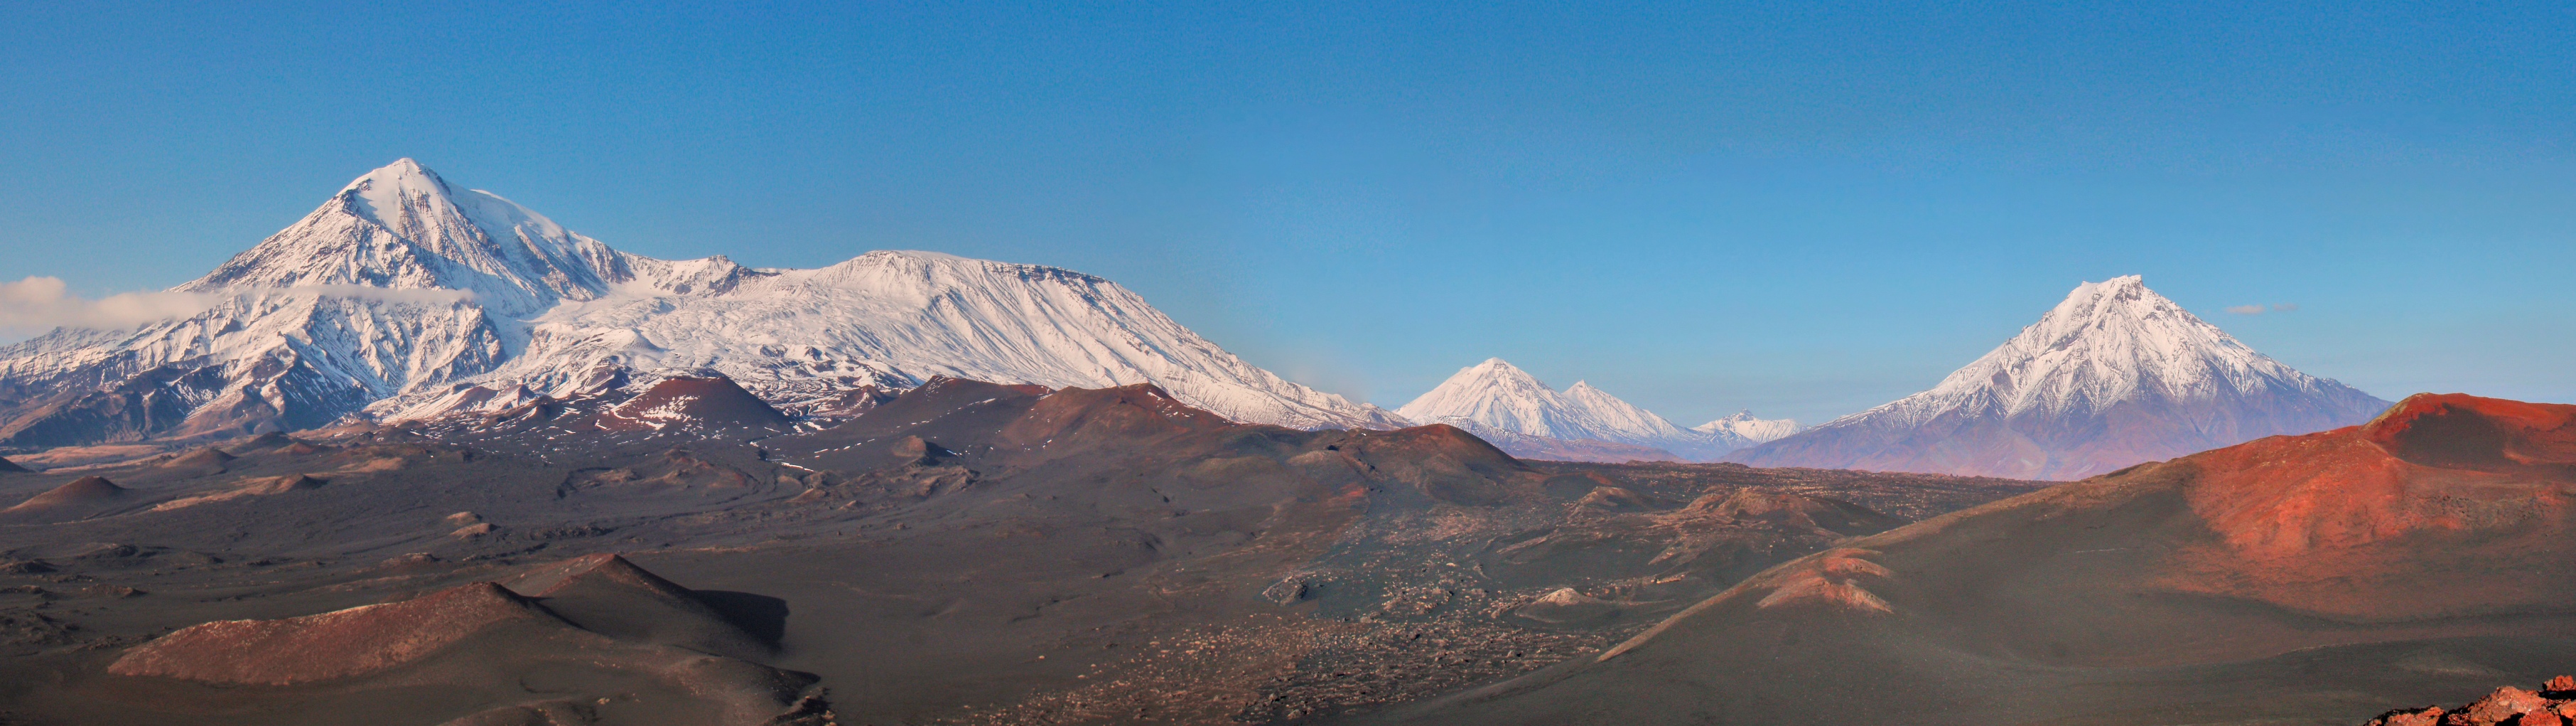 Панорама: вулканы Толбачик и Зимина (с) Архив КГБУ Природный парк Вулканы Камчатки